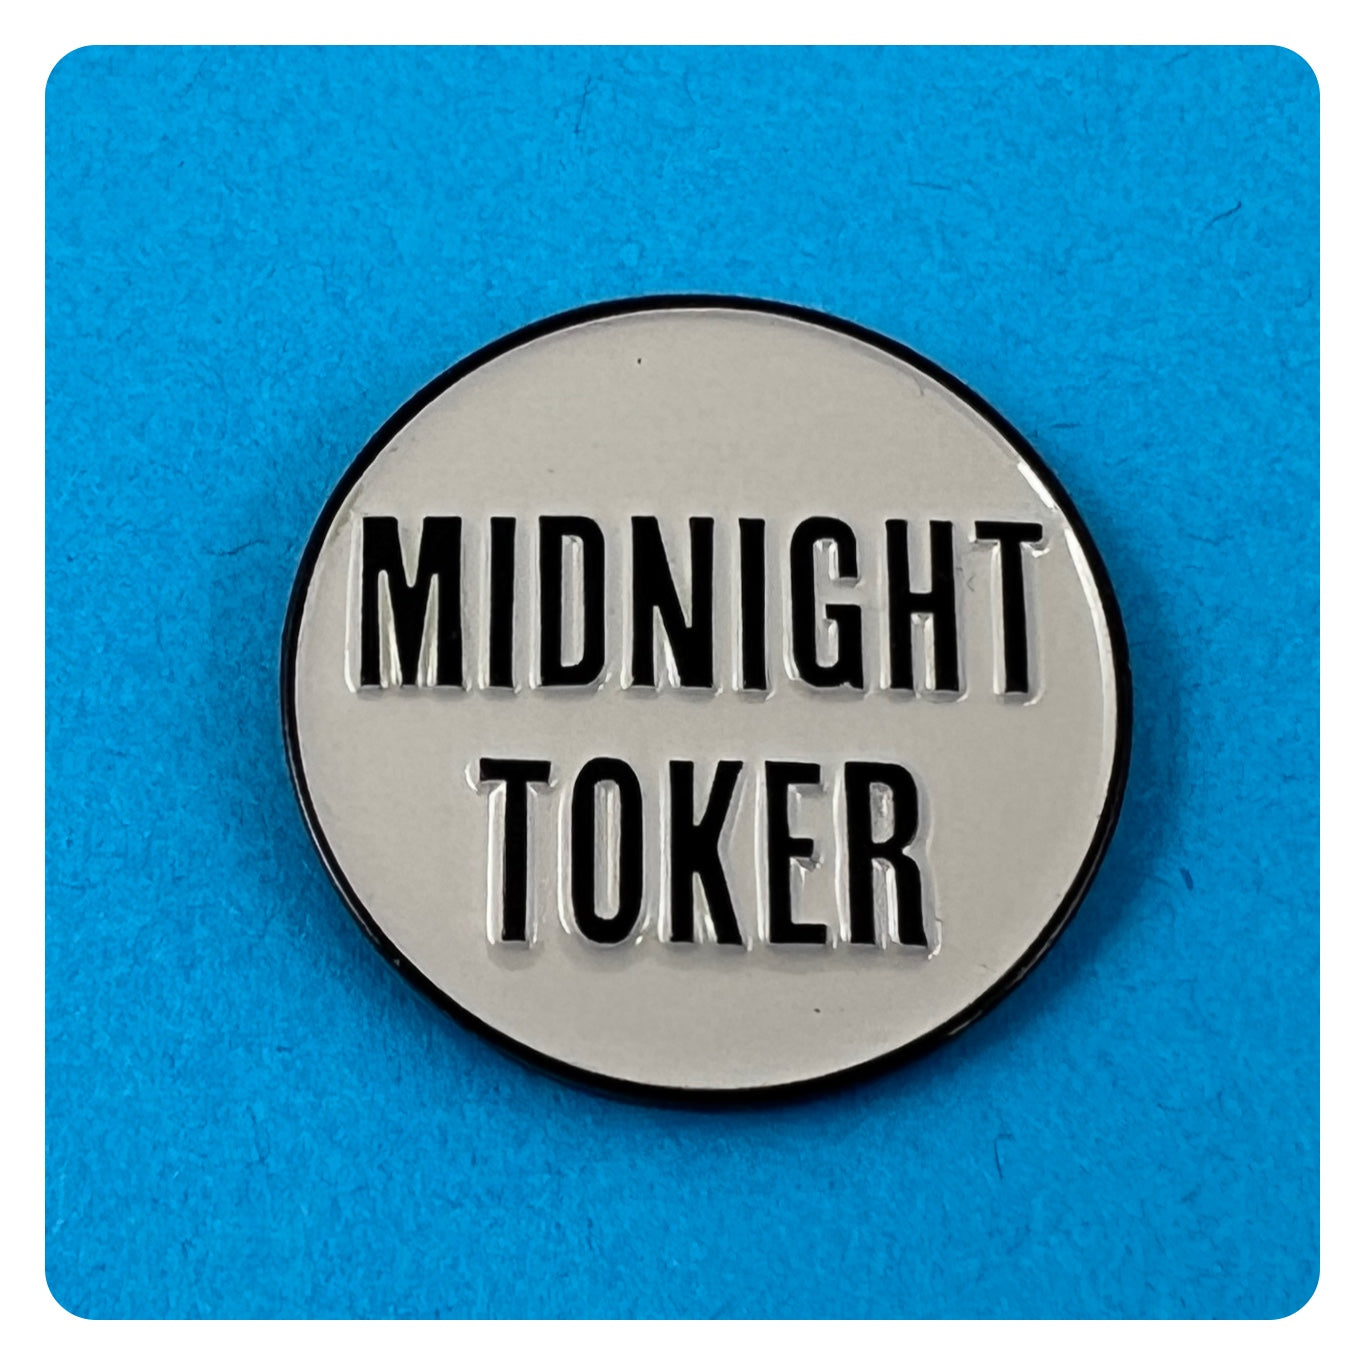 Midnight Toker Enamel Pin